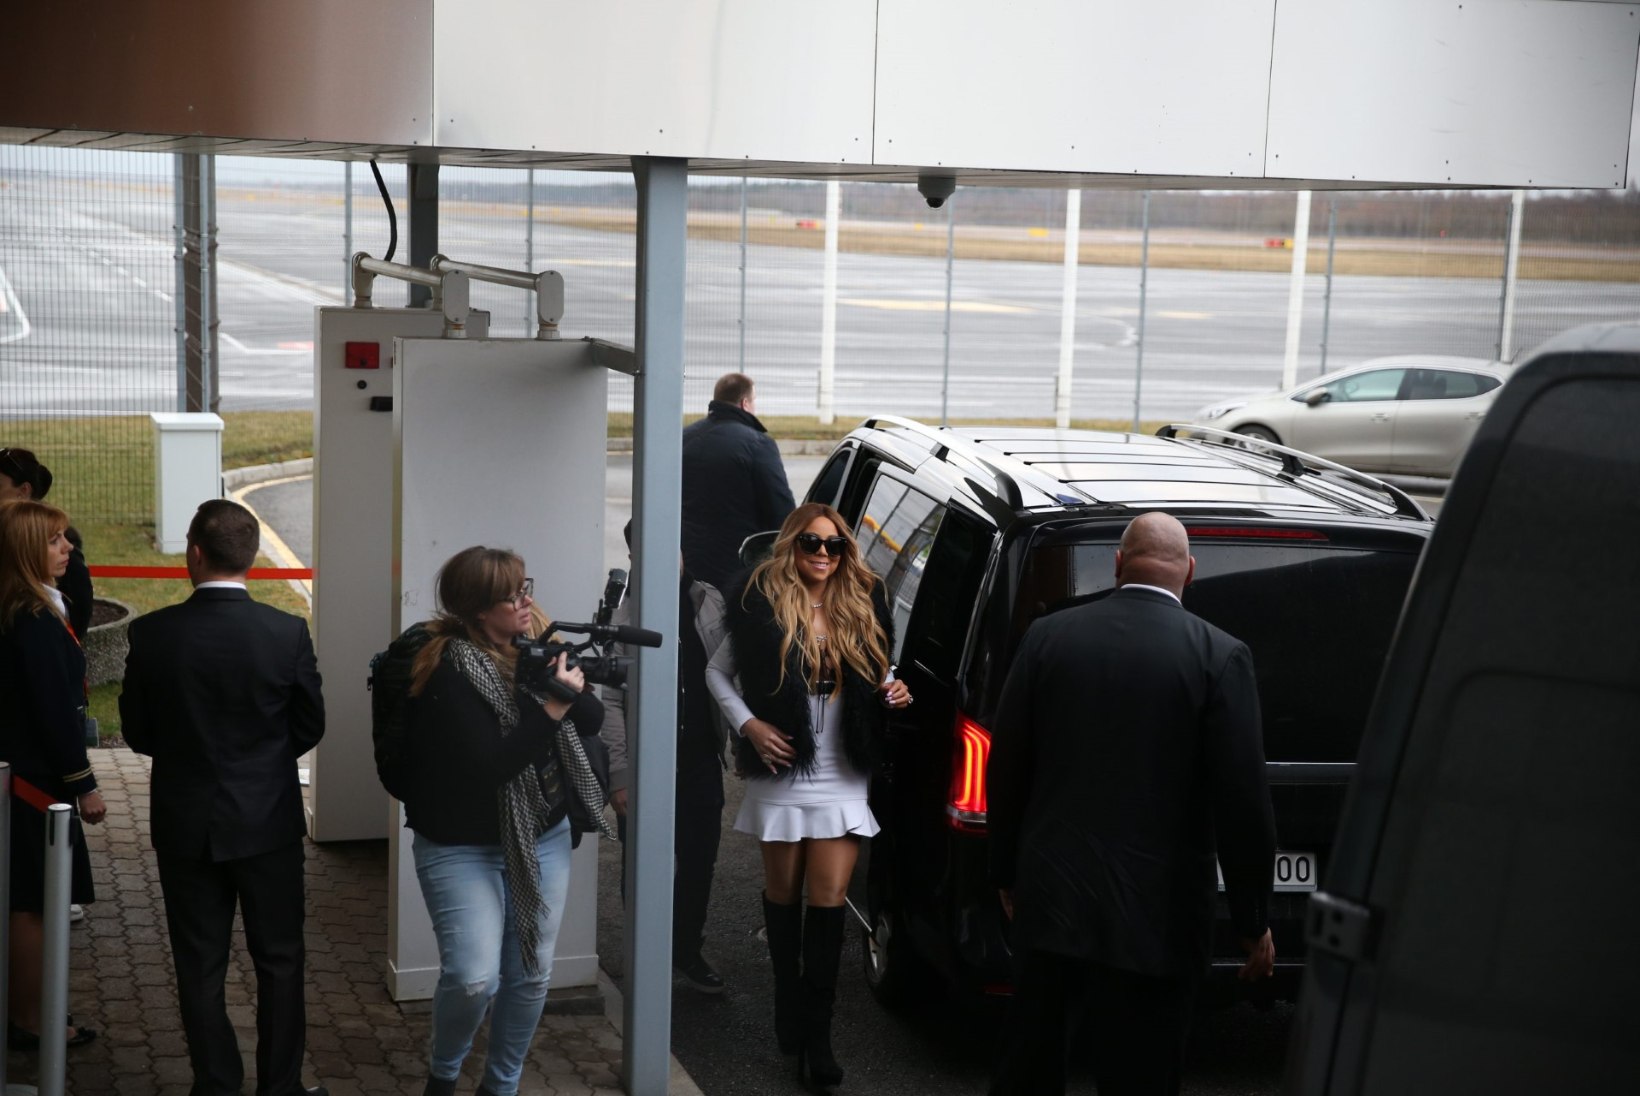 Mariah Carey teavitas Tallinnasse saabumisest oma fänne ka Instagramis